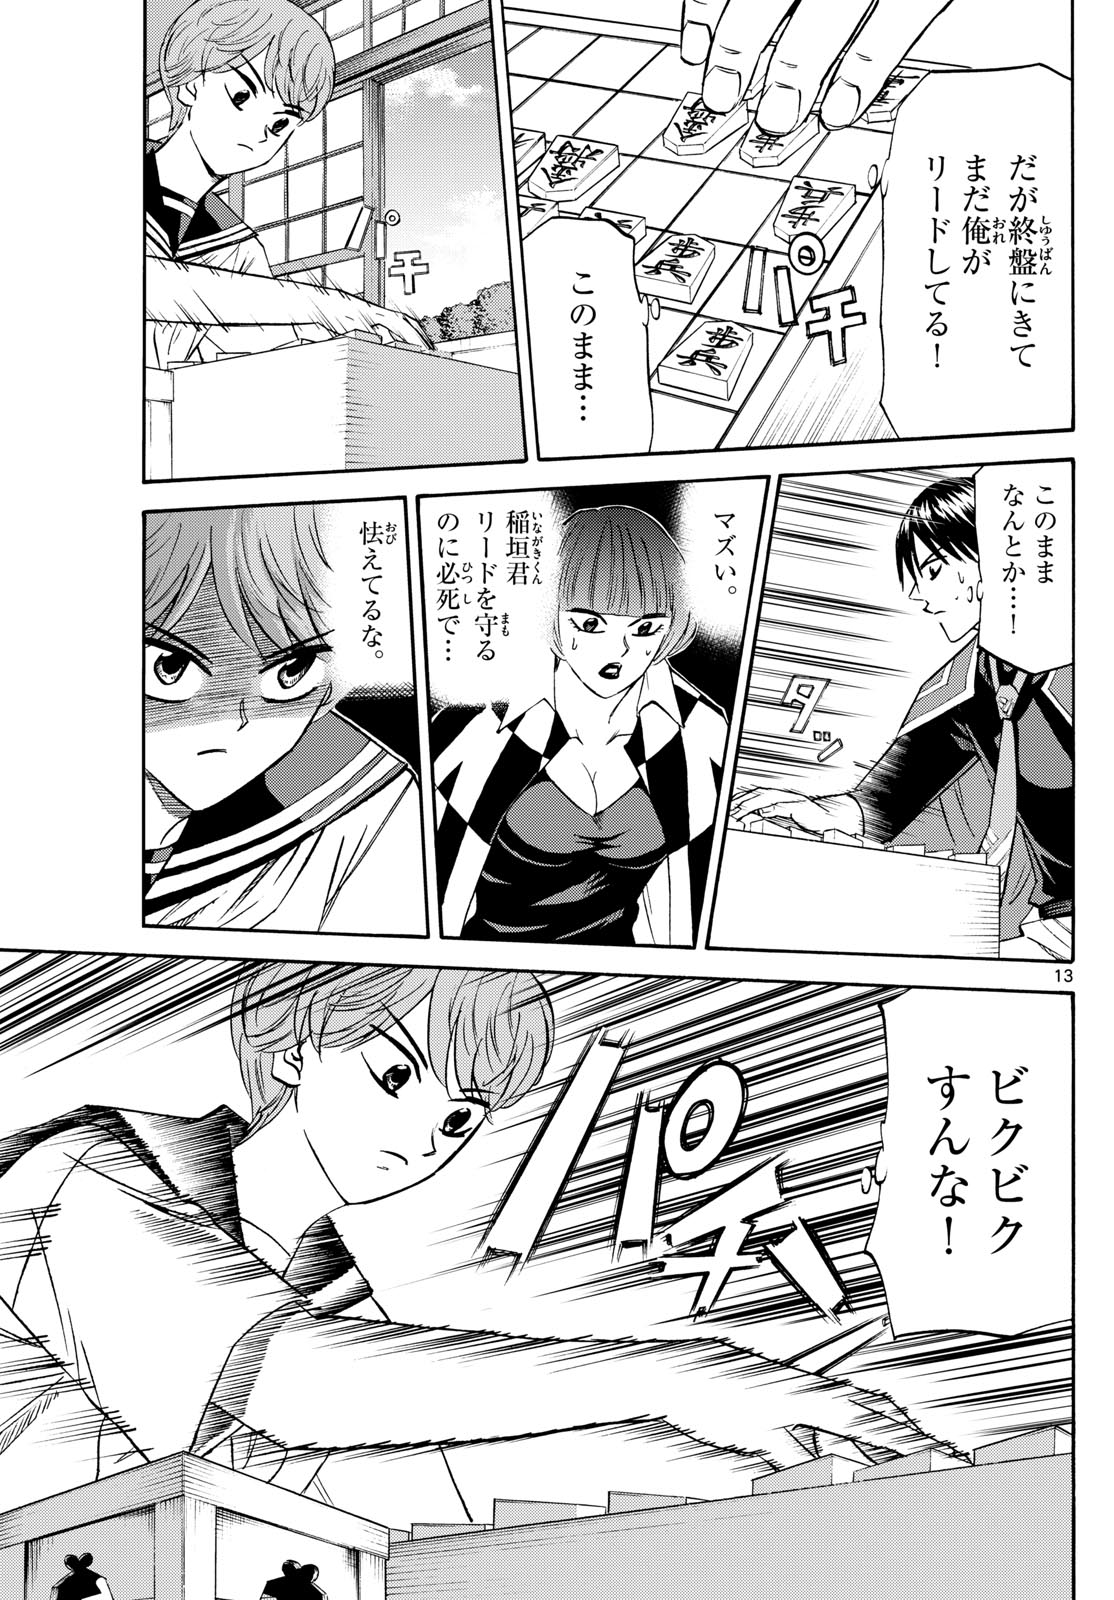 Tatsu to Ichigo - Chapter 198 - Page 13